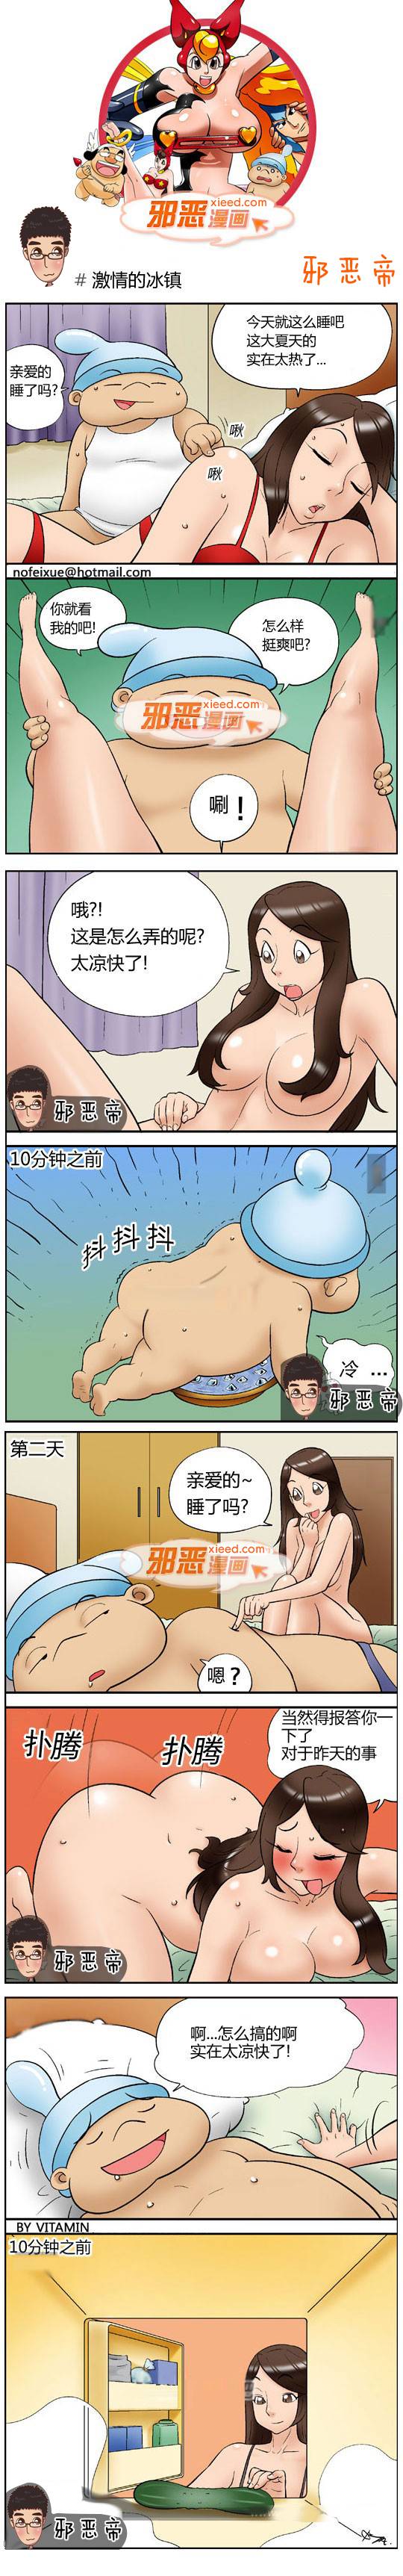 邪恶漫画爆笑囧图第326刊：尴尬的眼福